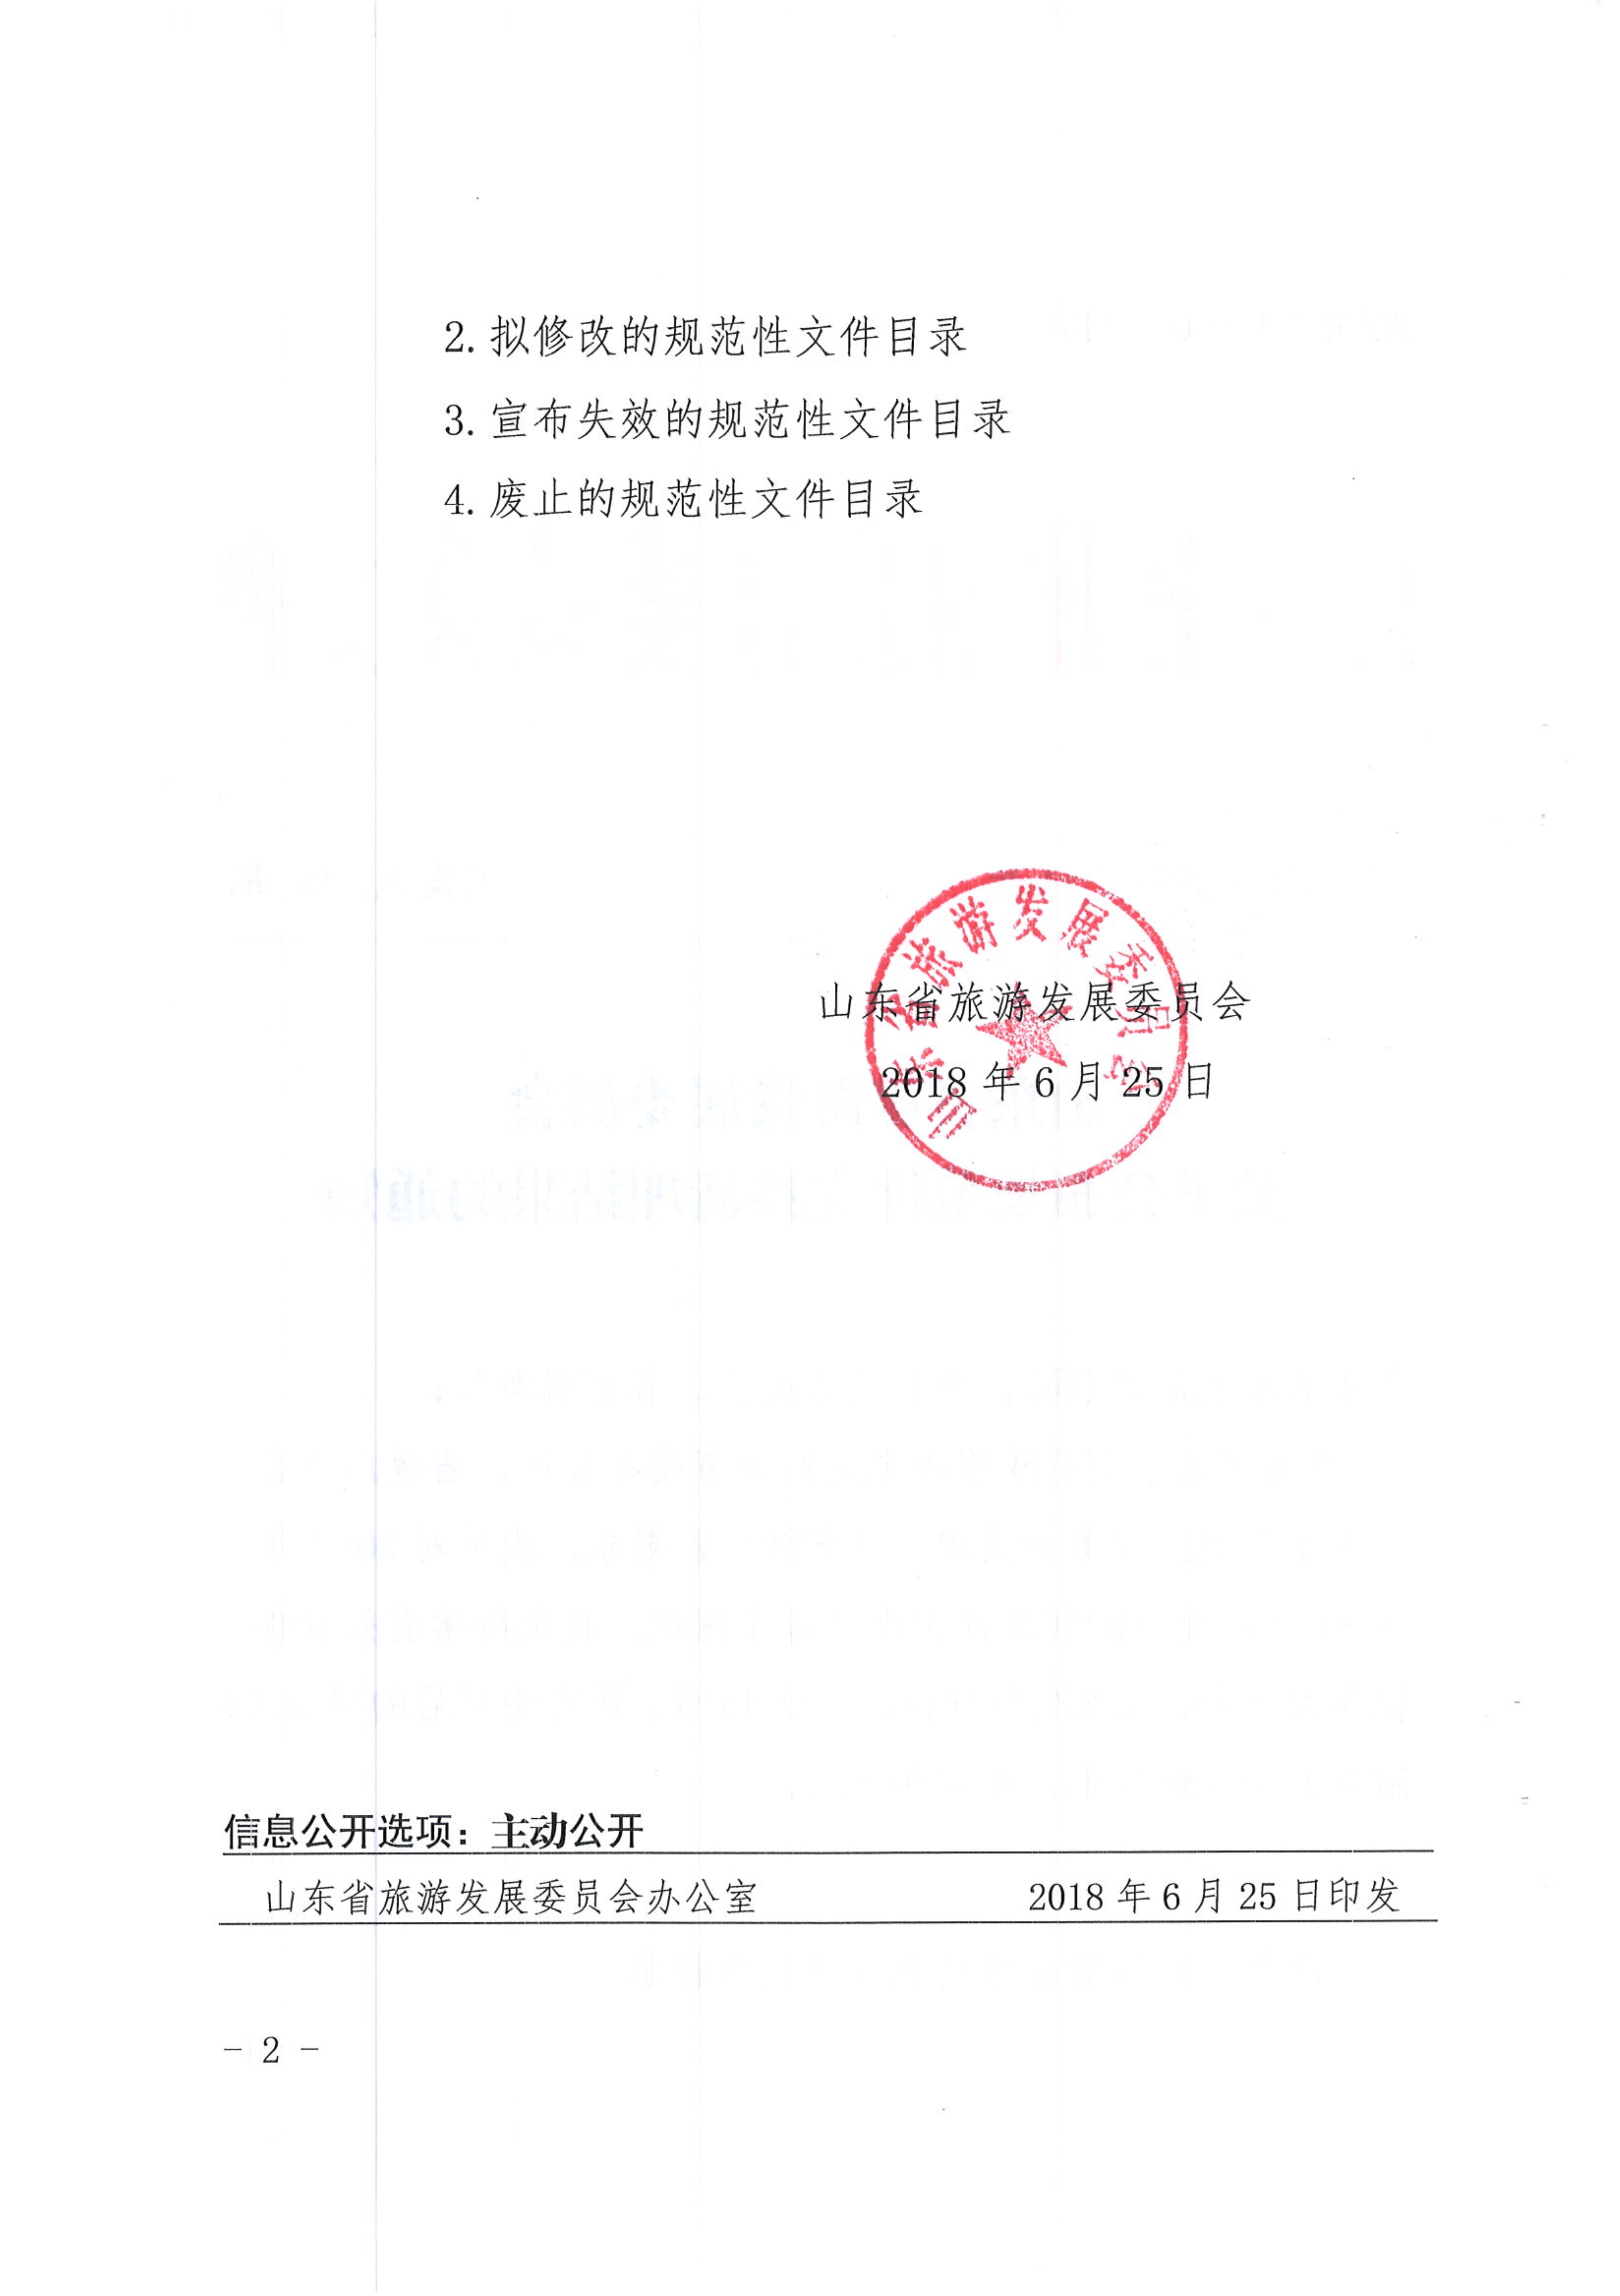 070310063236_0山东省旅游发展委员会关于公布规范性文件清理结果的通知鲁旅字201854号_2.jpg